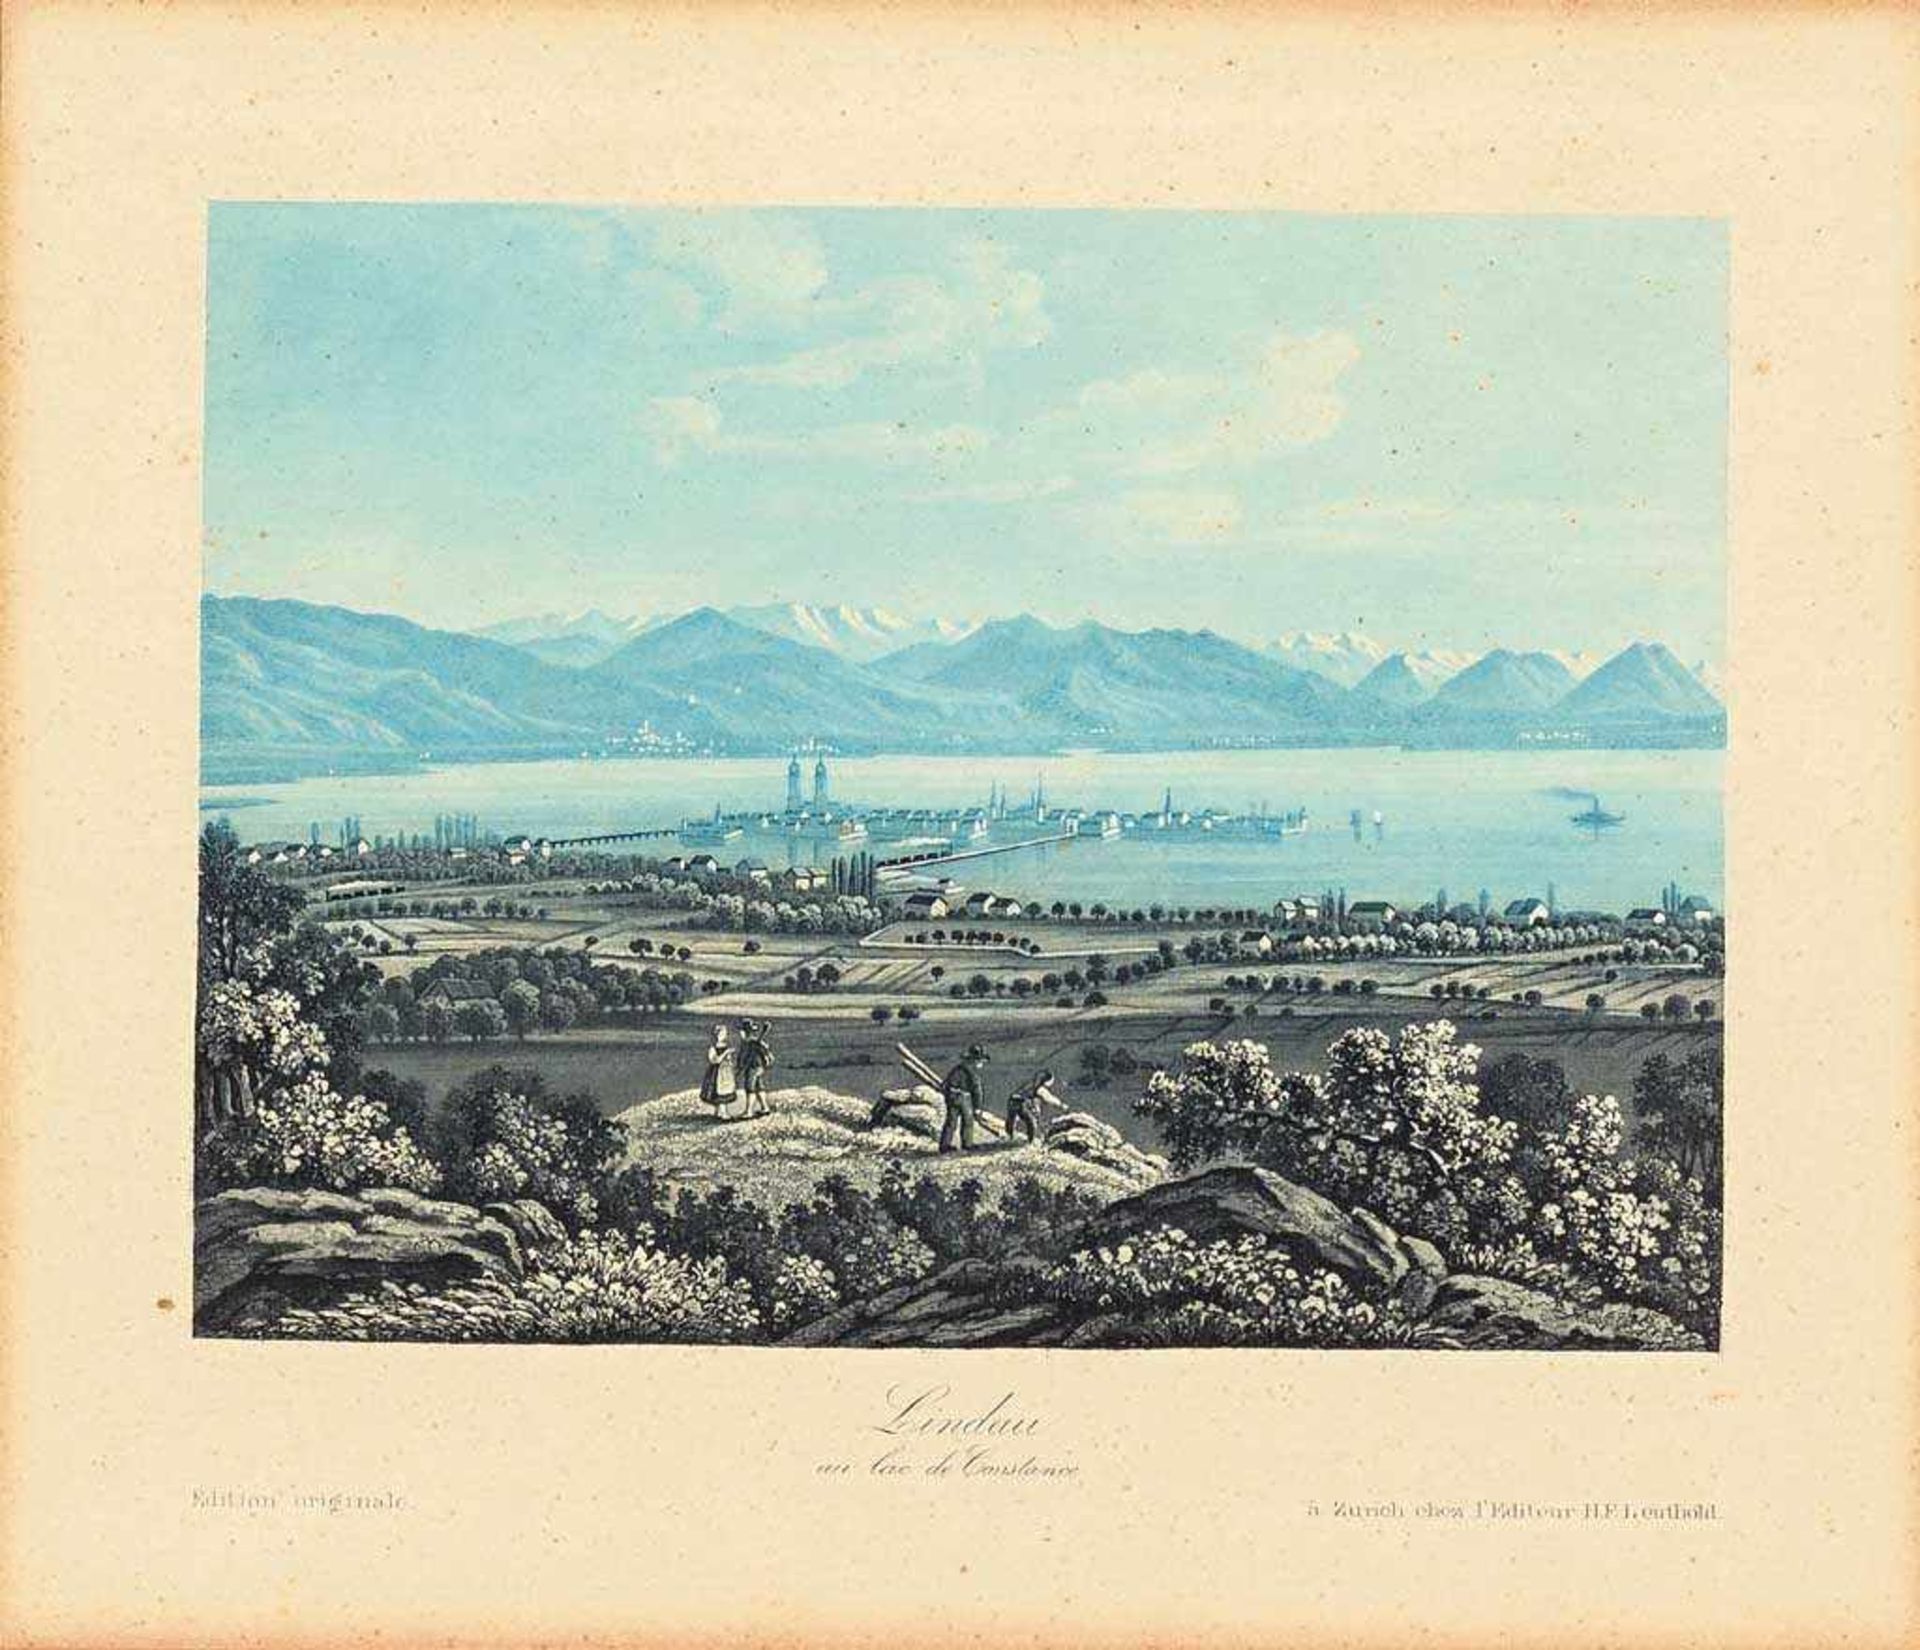 Lindau. "Lindau au lac de Constance. Edition originale à Zurich chez l'Editeur H.F. Leuthold" (